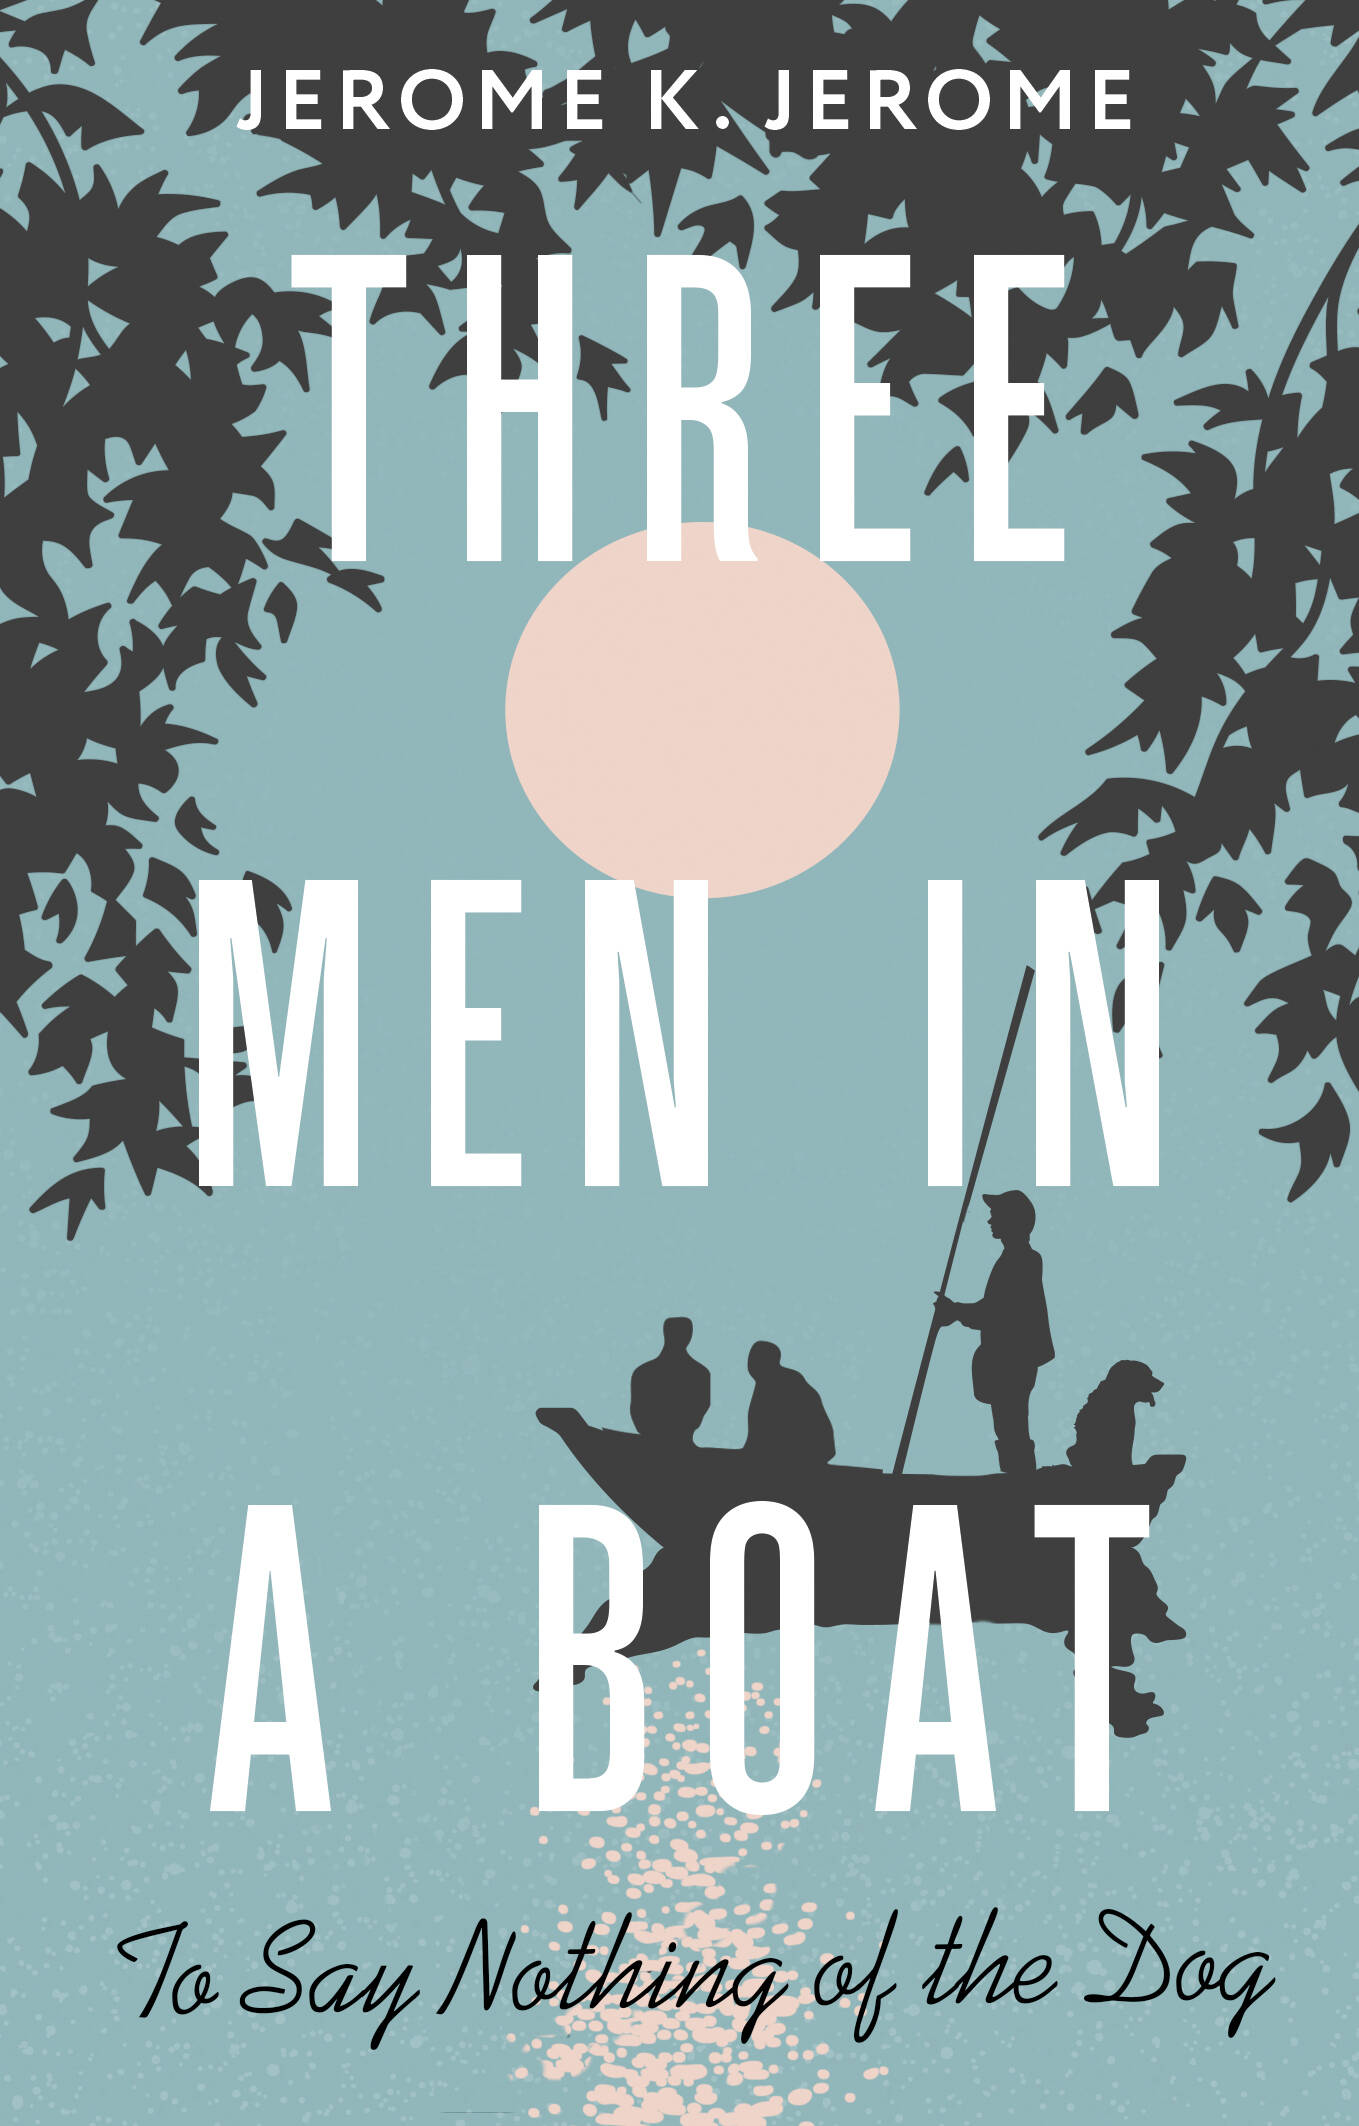 Джером Джером Клапка Three Men in a Boat (To say Nothing of the Dog) джером джером клапка three men in a boat to say nothing of the dog